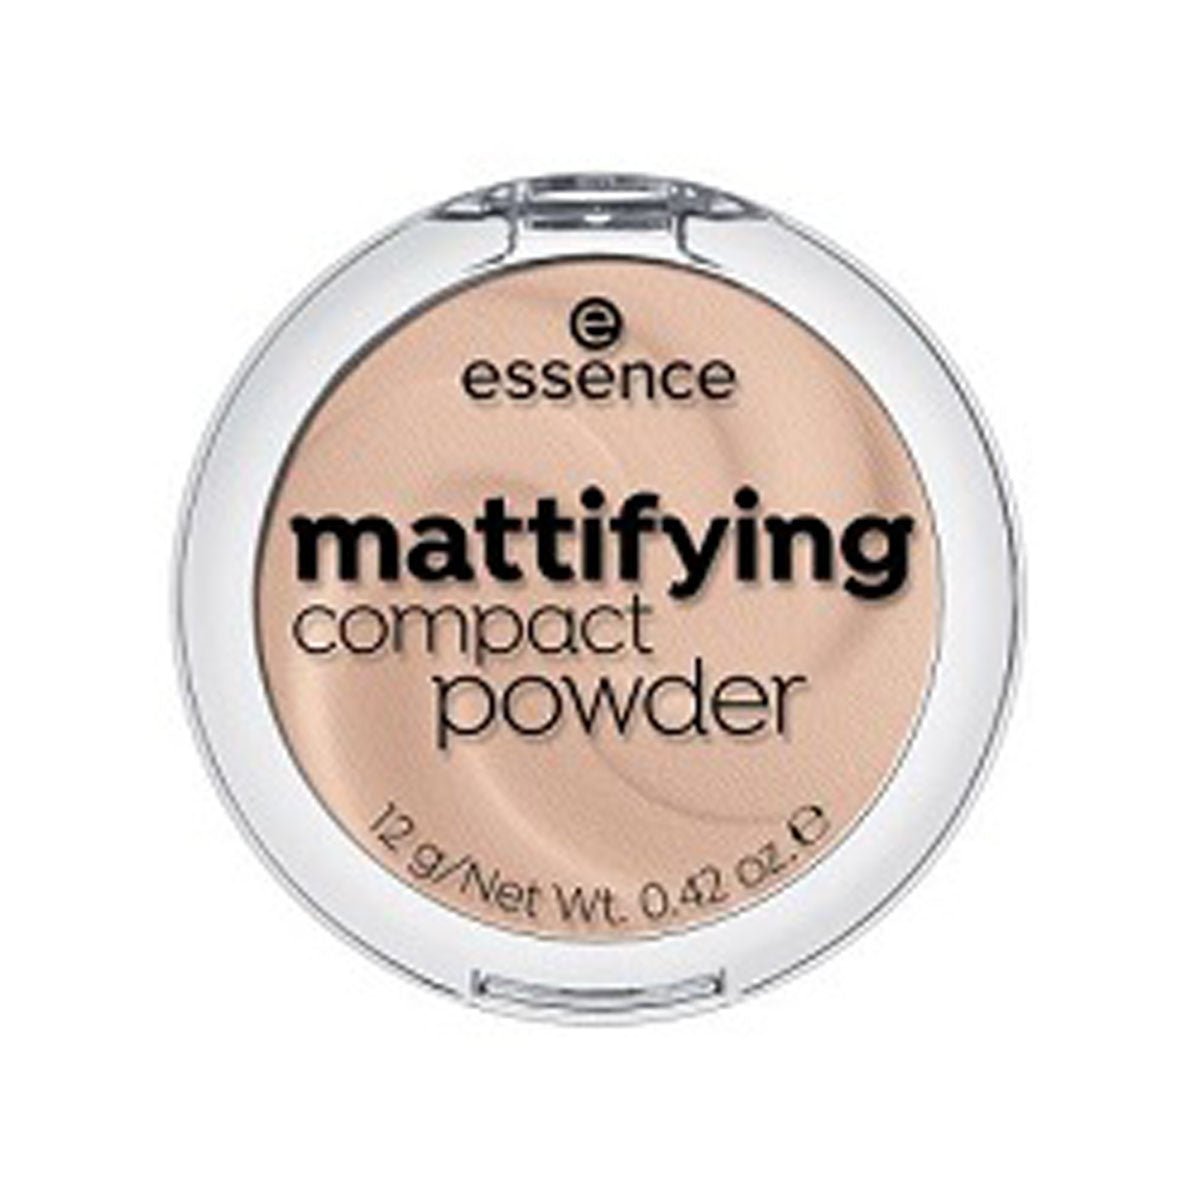 Essence Mattifying Compact Powder - AllurebeautypkEssence Mattifying Compact Powder